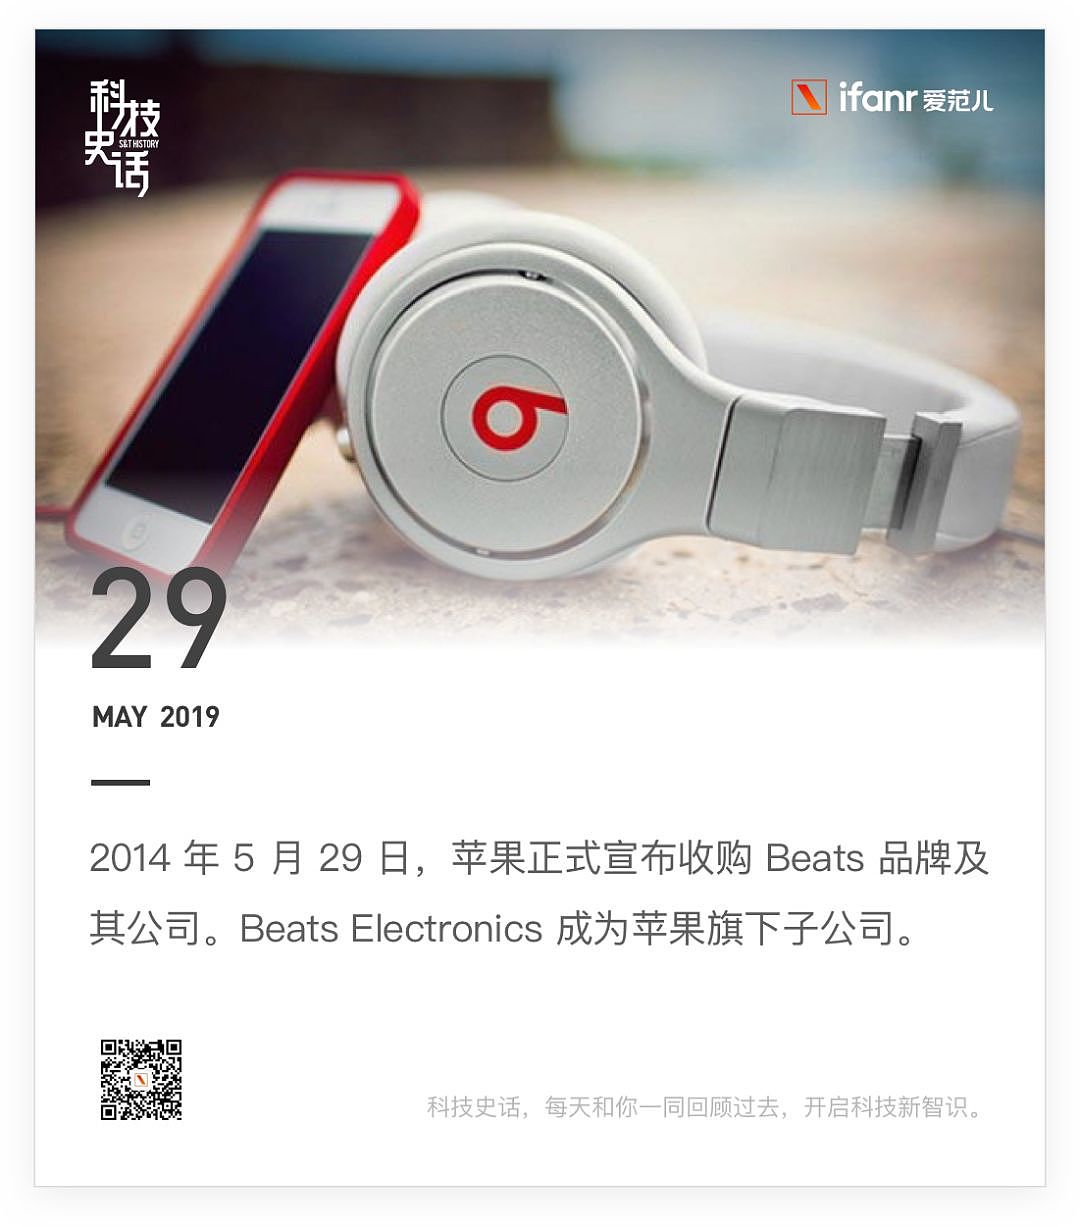 苹果发布新 iPod touch / 丰田 500 亿日元投资滴滴 / iOS 13 夜间模式曝光 - 25